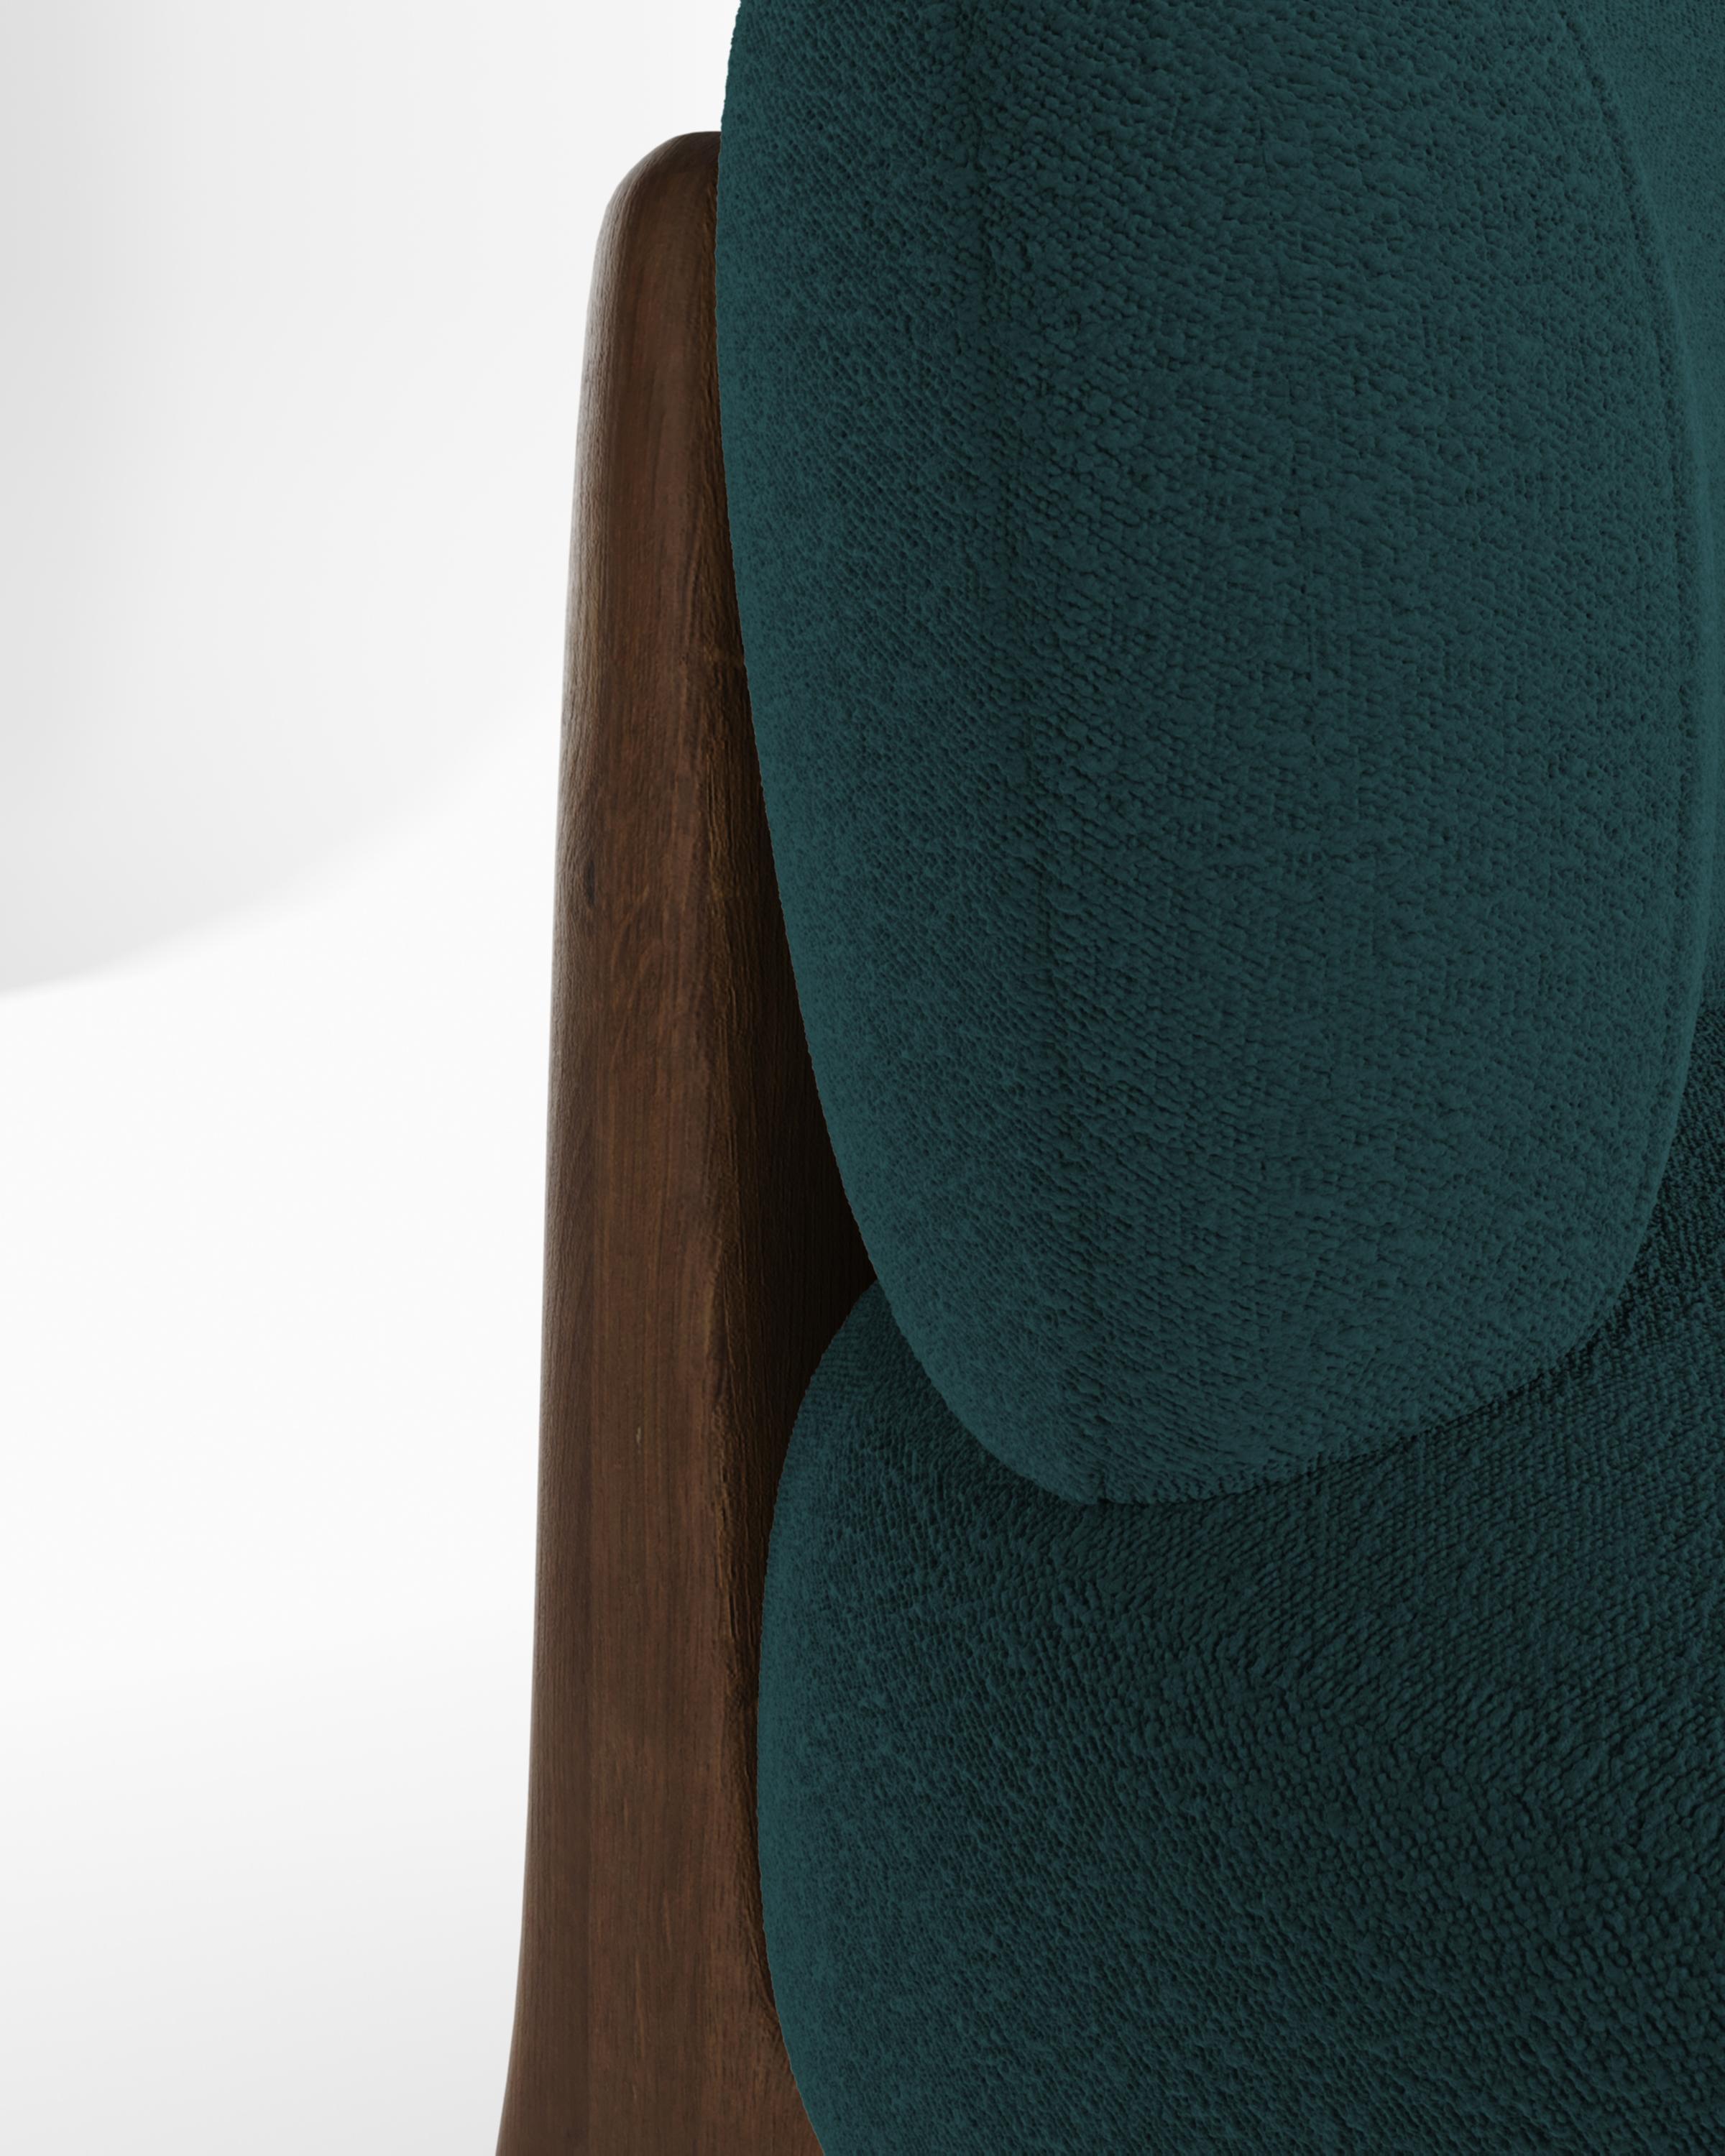 Moderner Tobo-Sessel aus Stoff und Eichenholz von Alter Ego für Collector Studio.

Untermauert von einer minimalistischen und raffinierten Ästhetik mit klaren Linien.

Abmessungen
B 70 cm 27,6